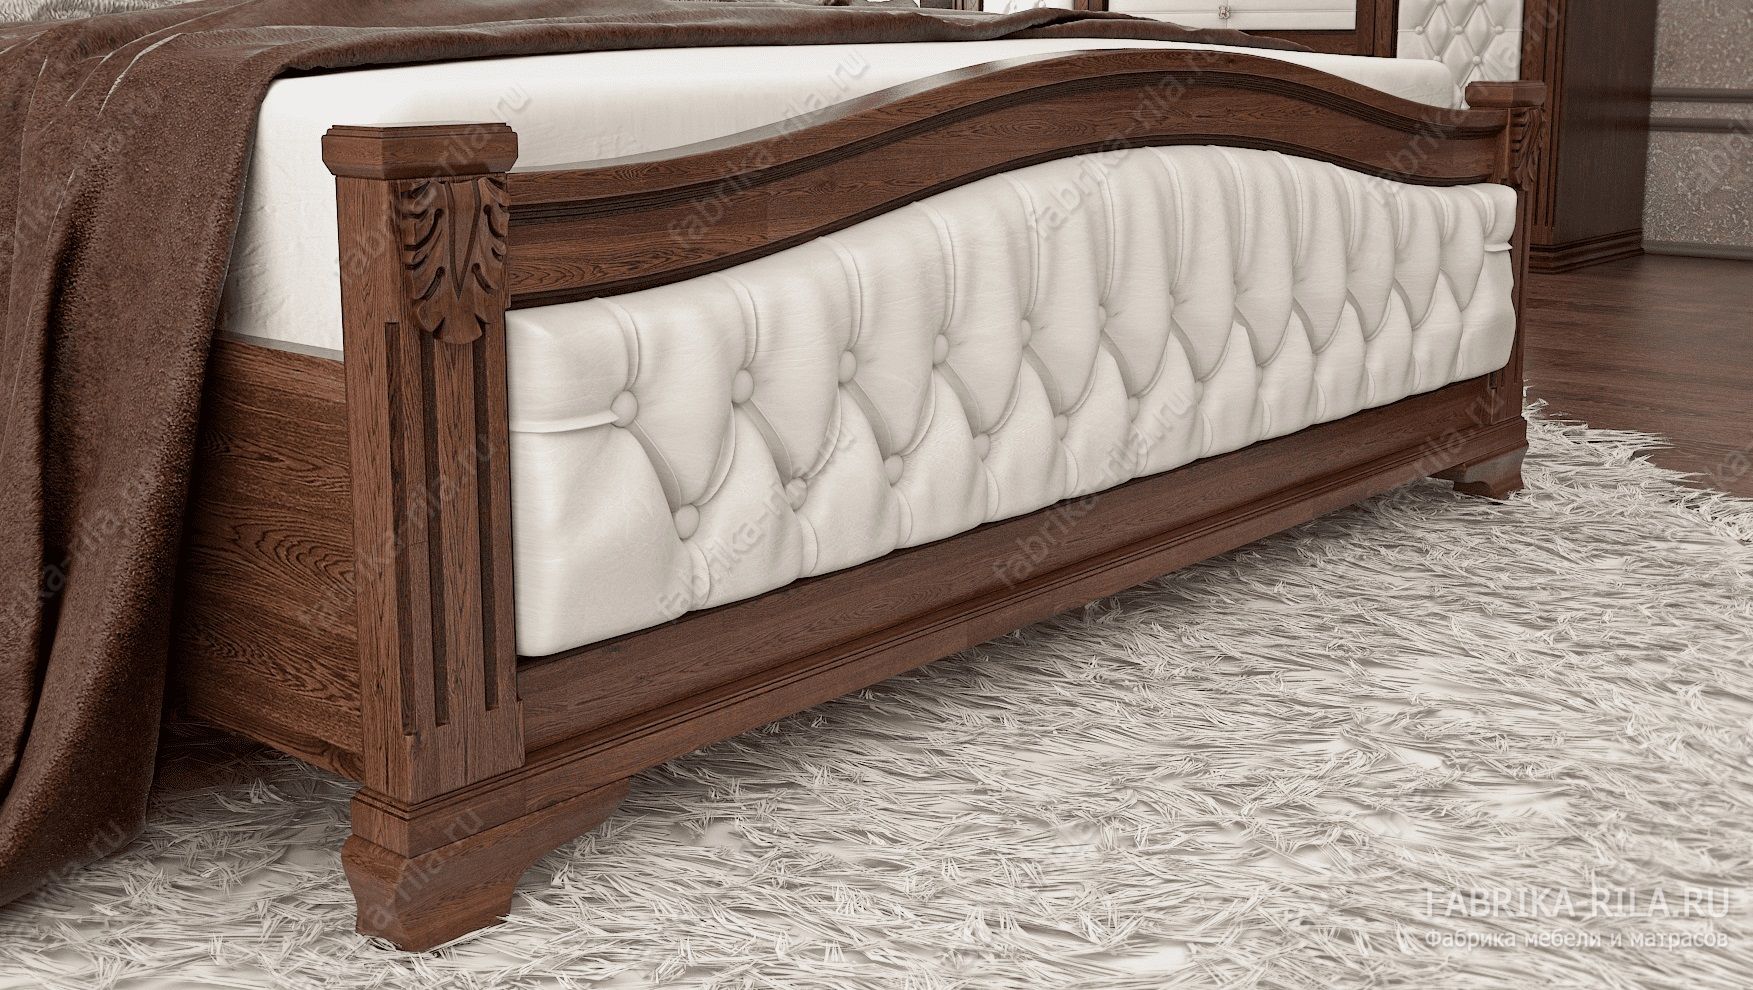 Кровать SONATA 1-MV — 160x200 см. из сосны